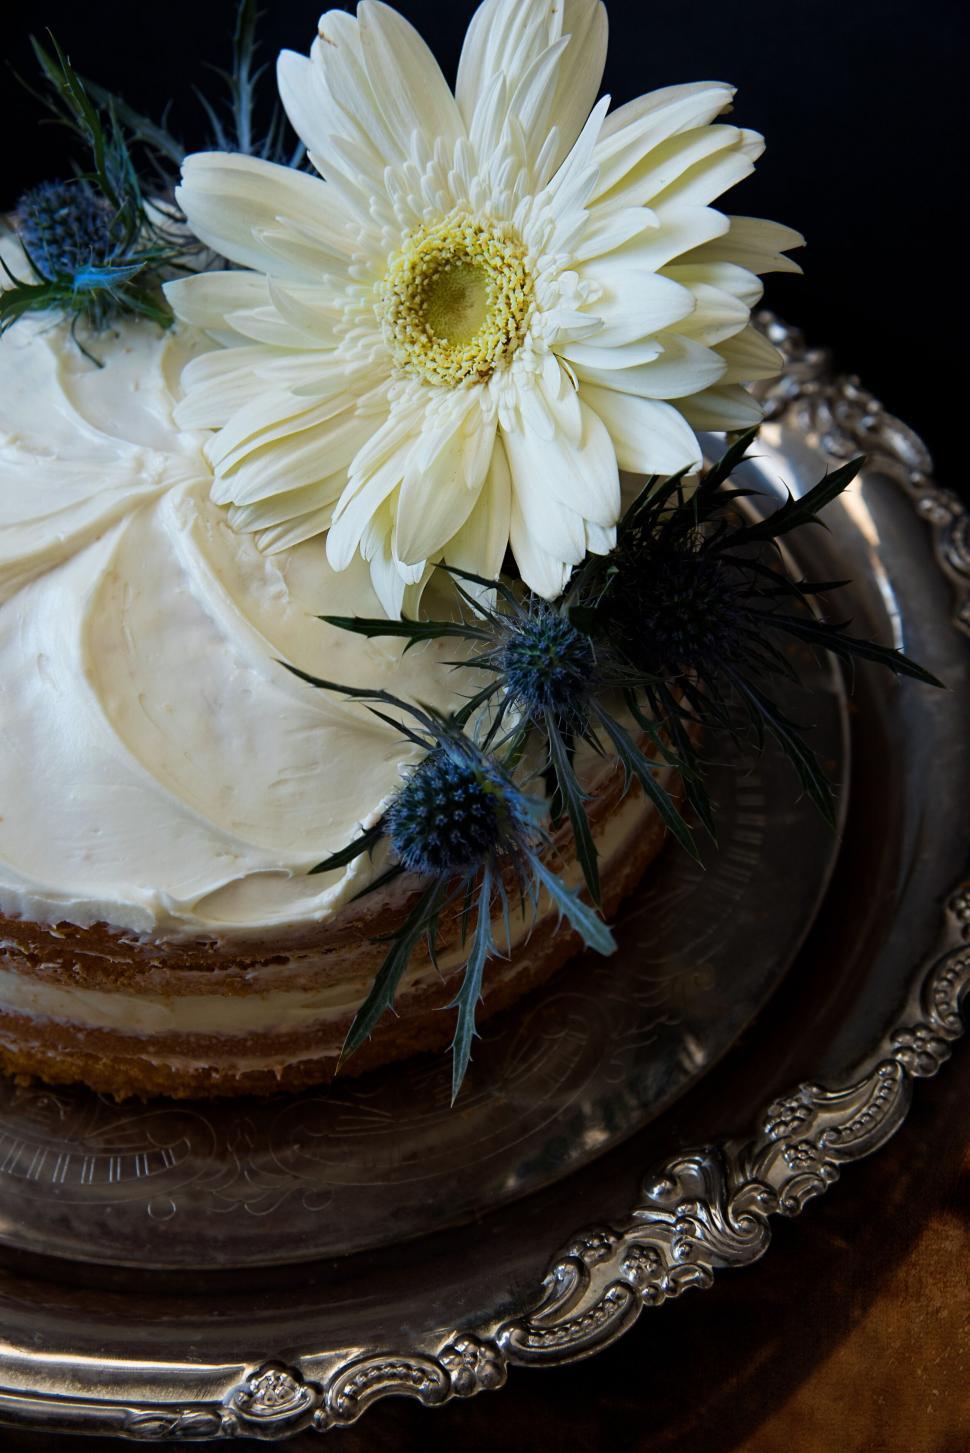 Free Image of Elegant cake with white flowers decoration 